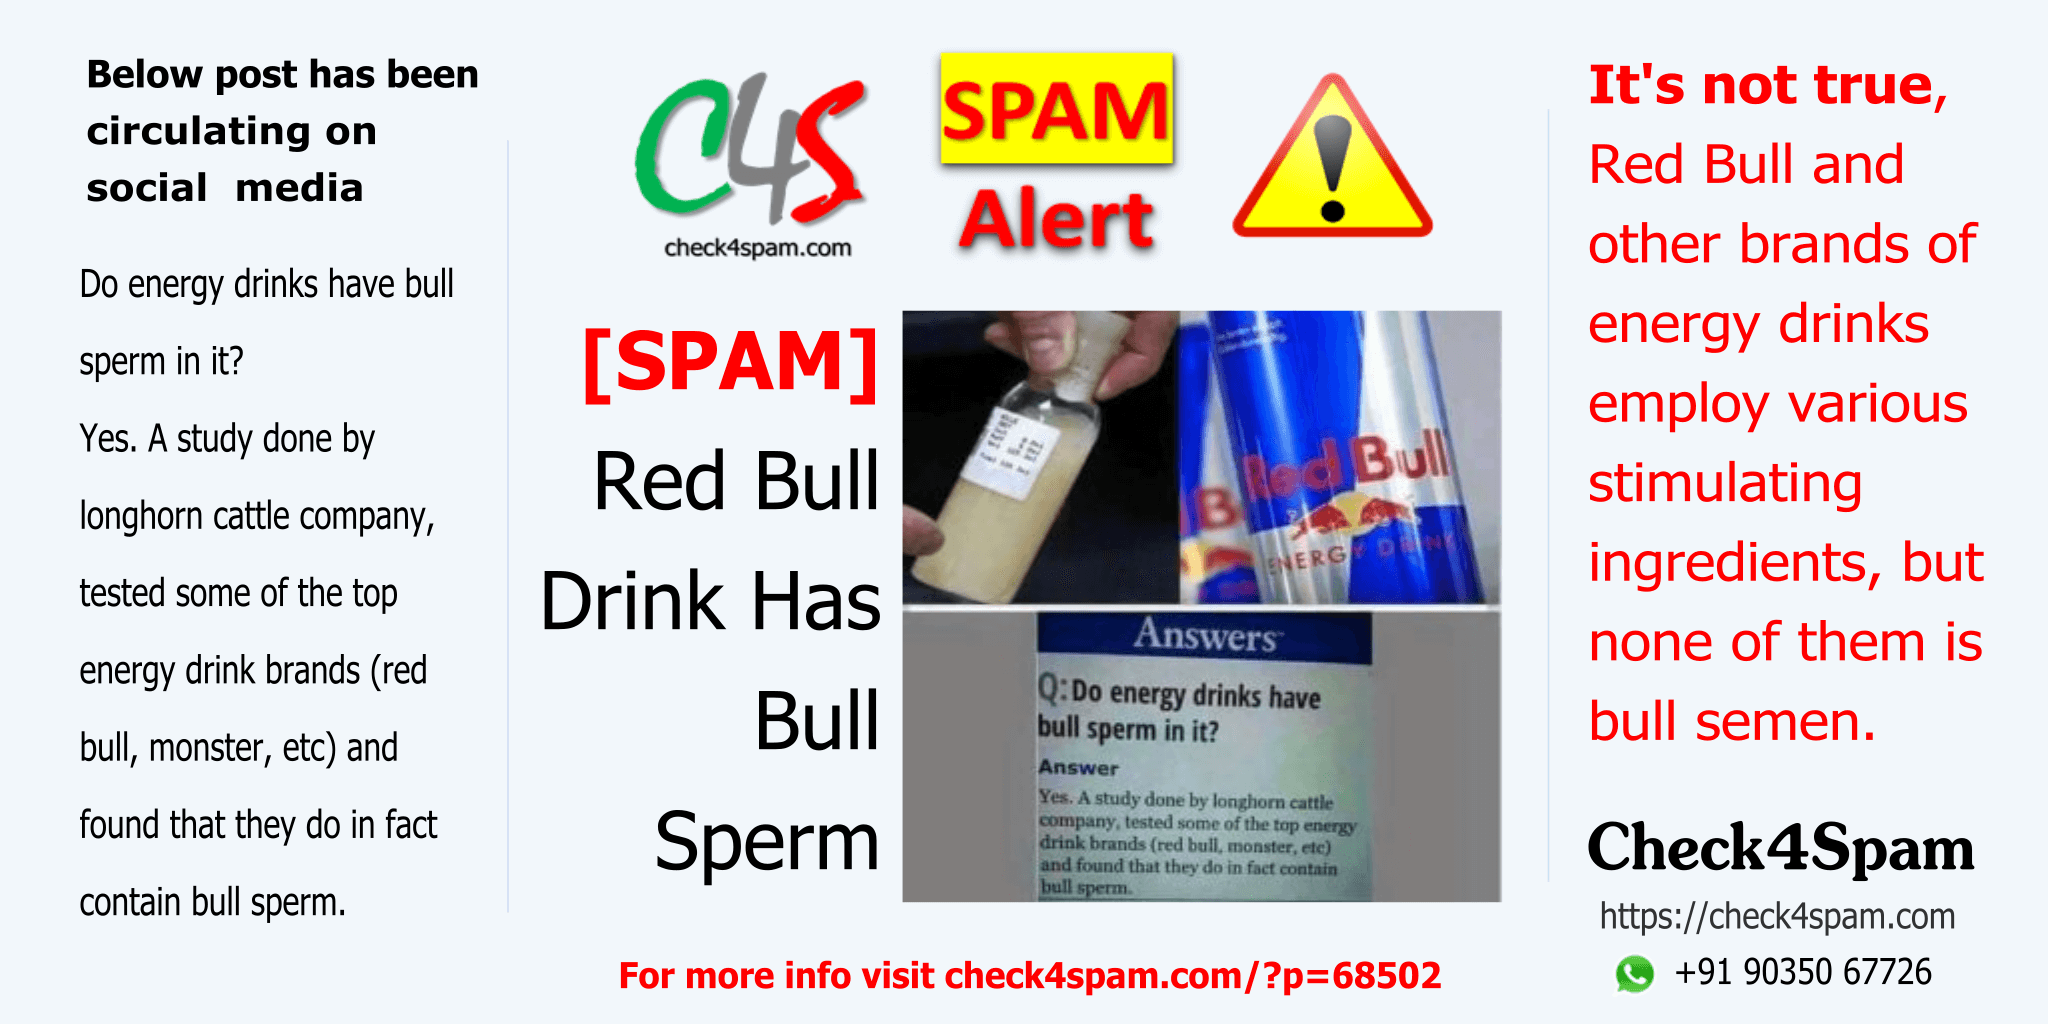 Red Bull Drink Bull Sperm - SPAM